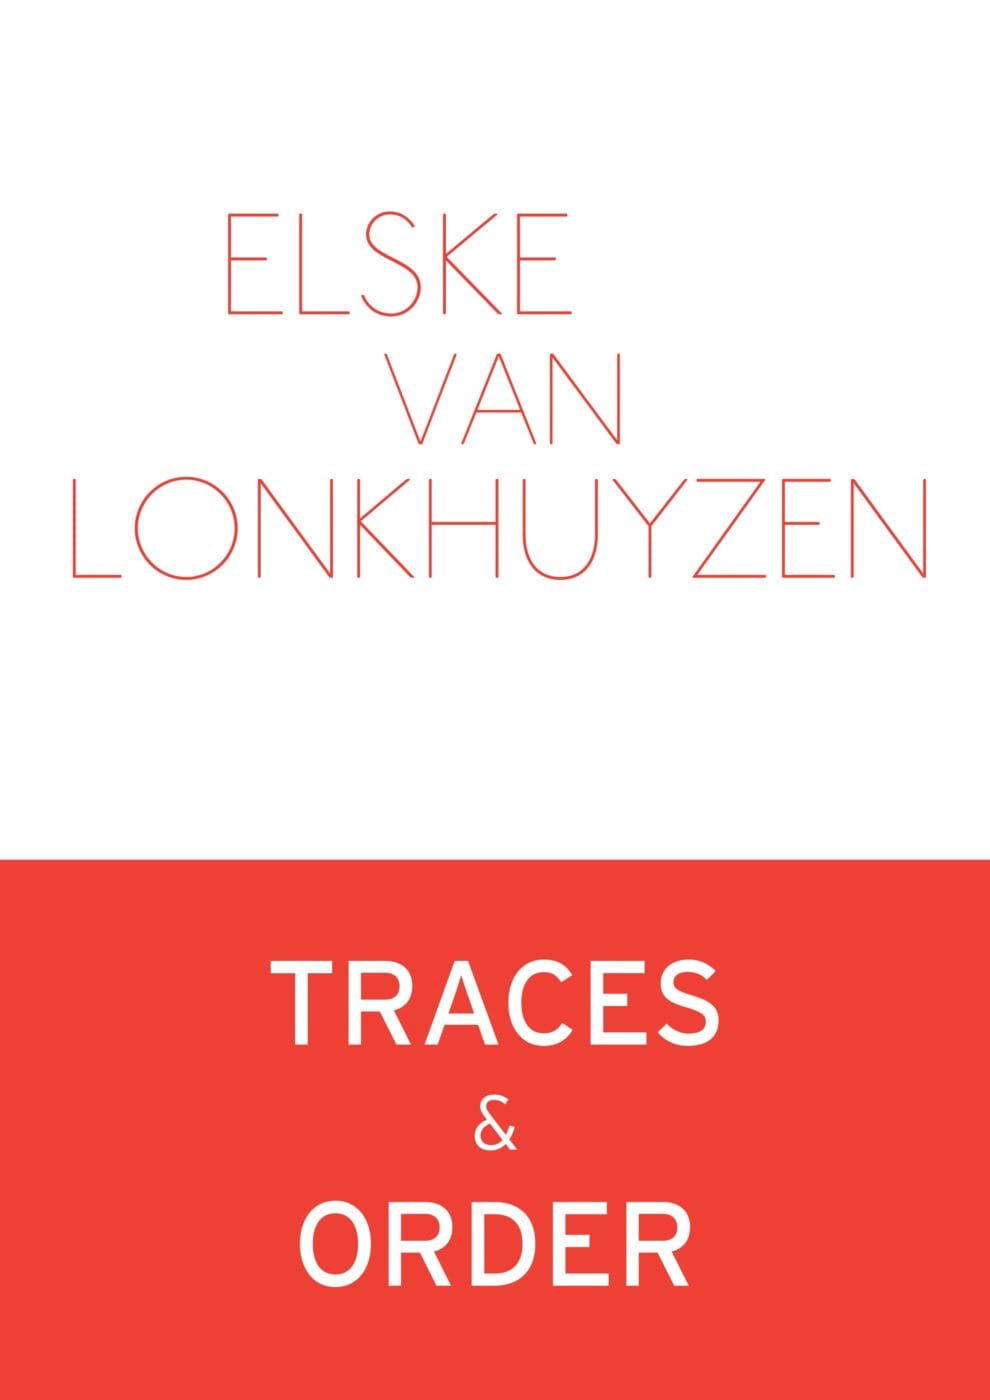 Traces & Order – Elske van Lonkhuyzen [e-pub]